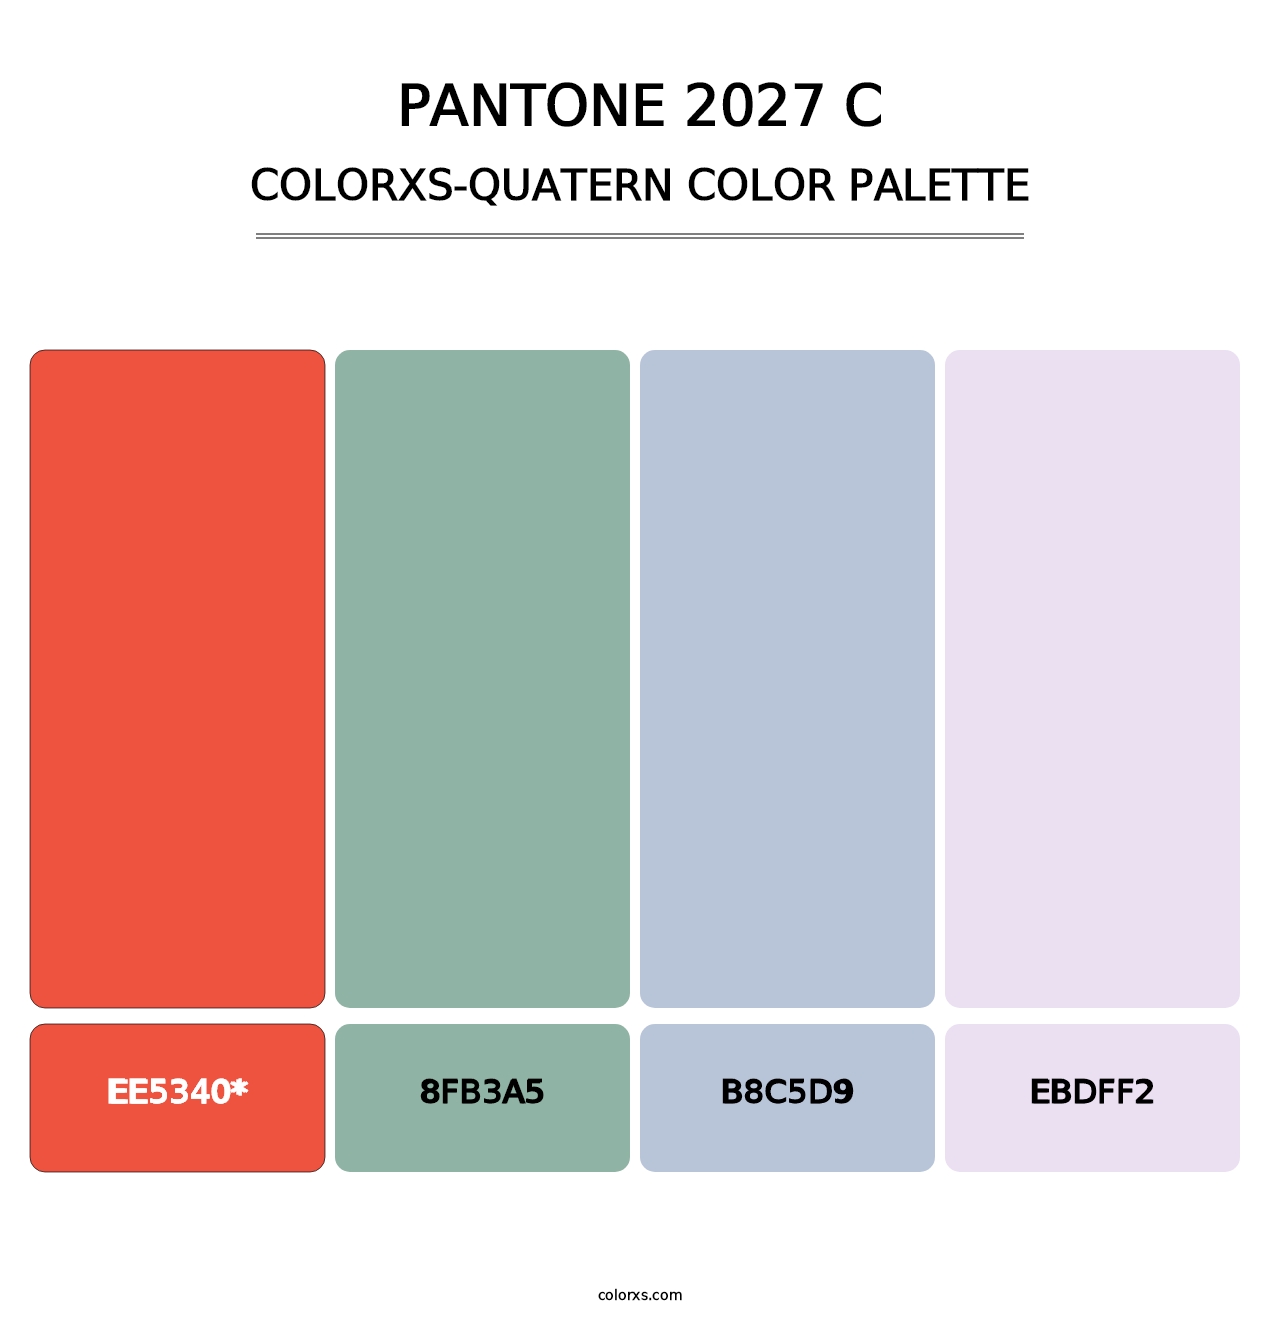 PANTONE 2027 C - Colorxs Quatern Palette